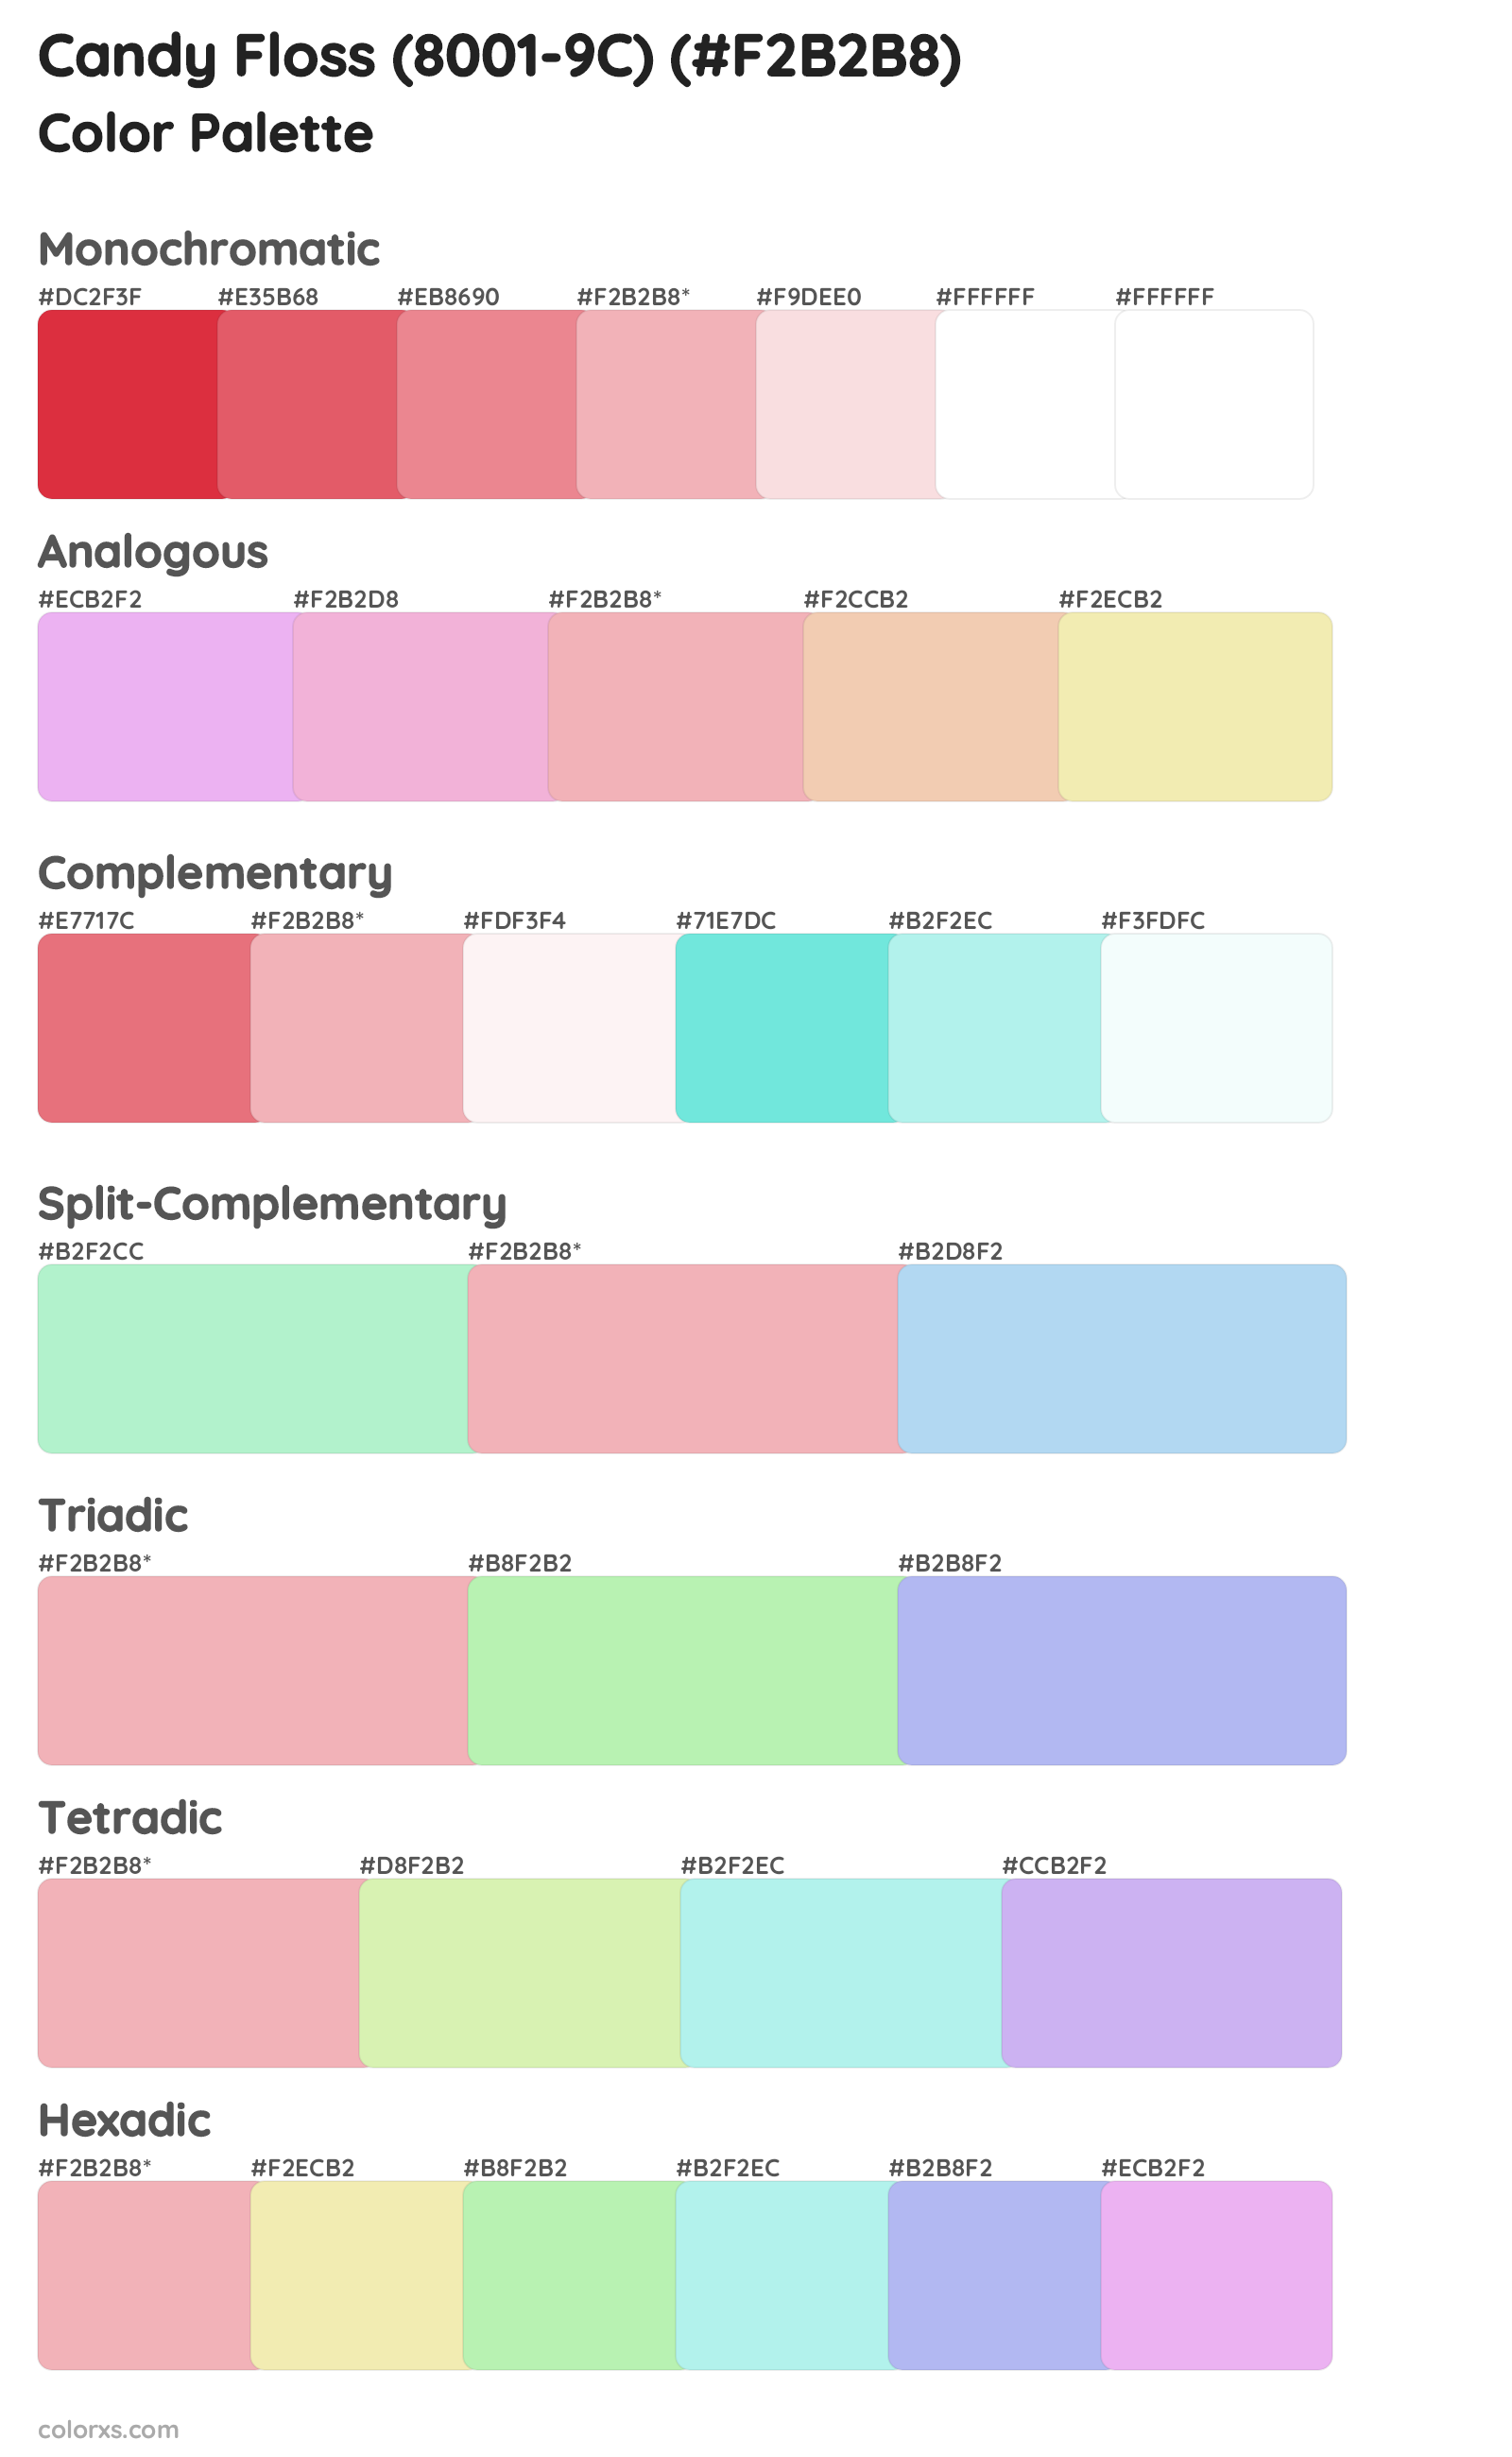 Candy Floss (8001-9C) Color Scheme Palettes